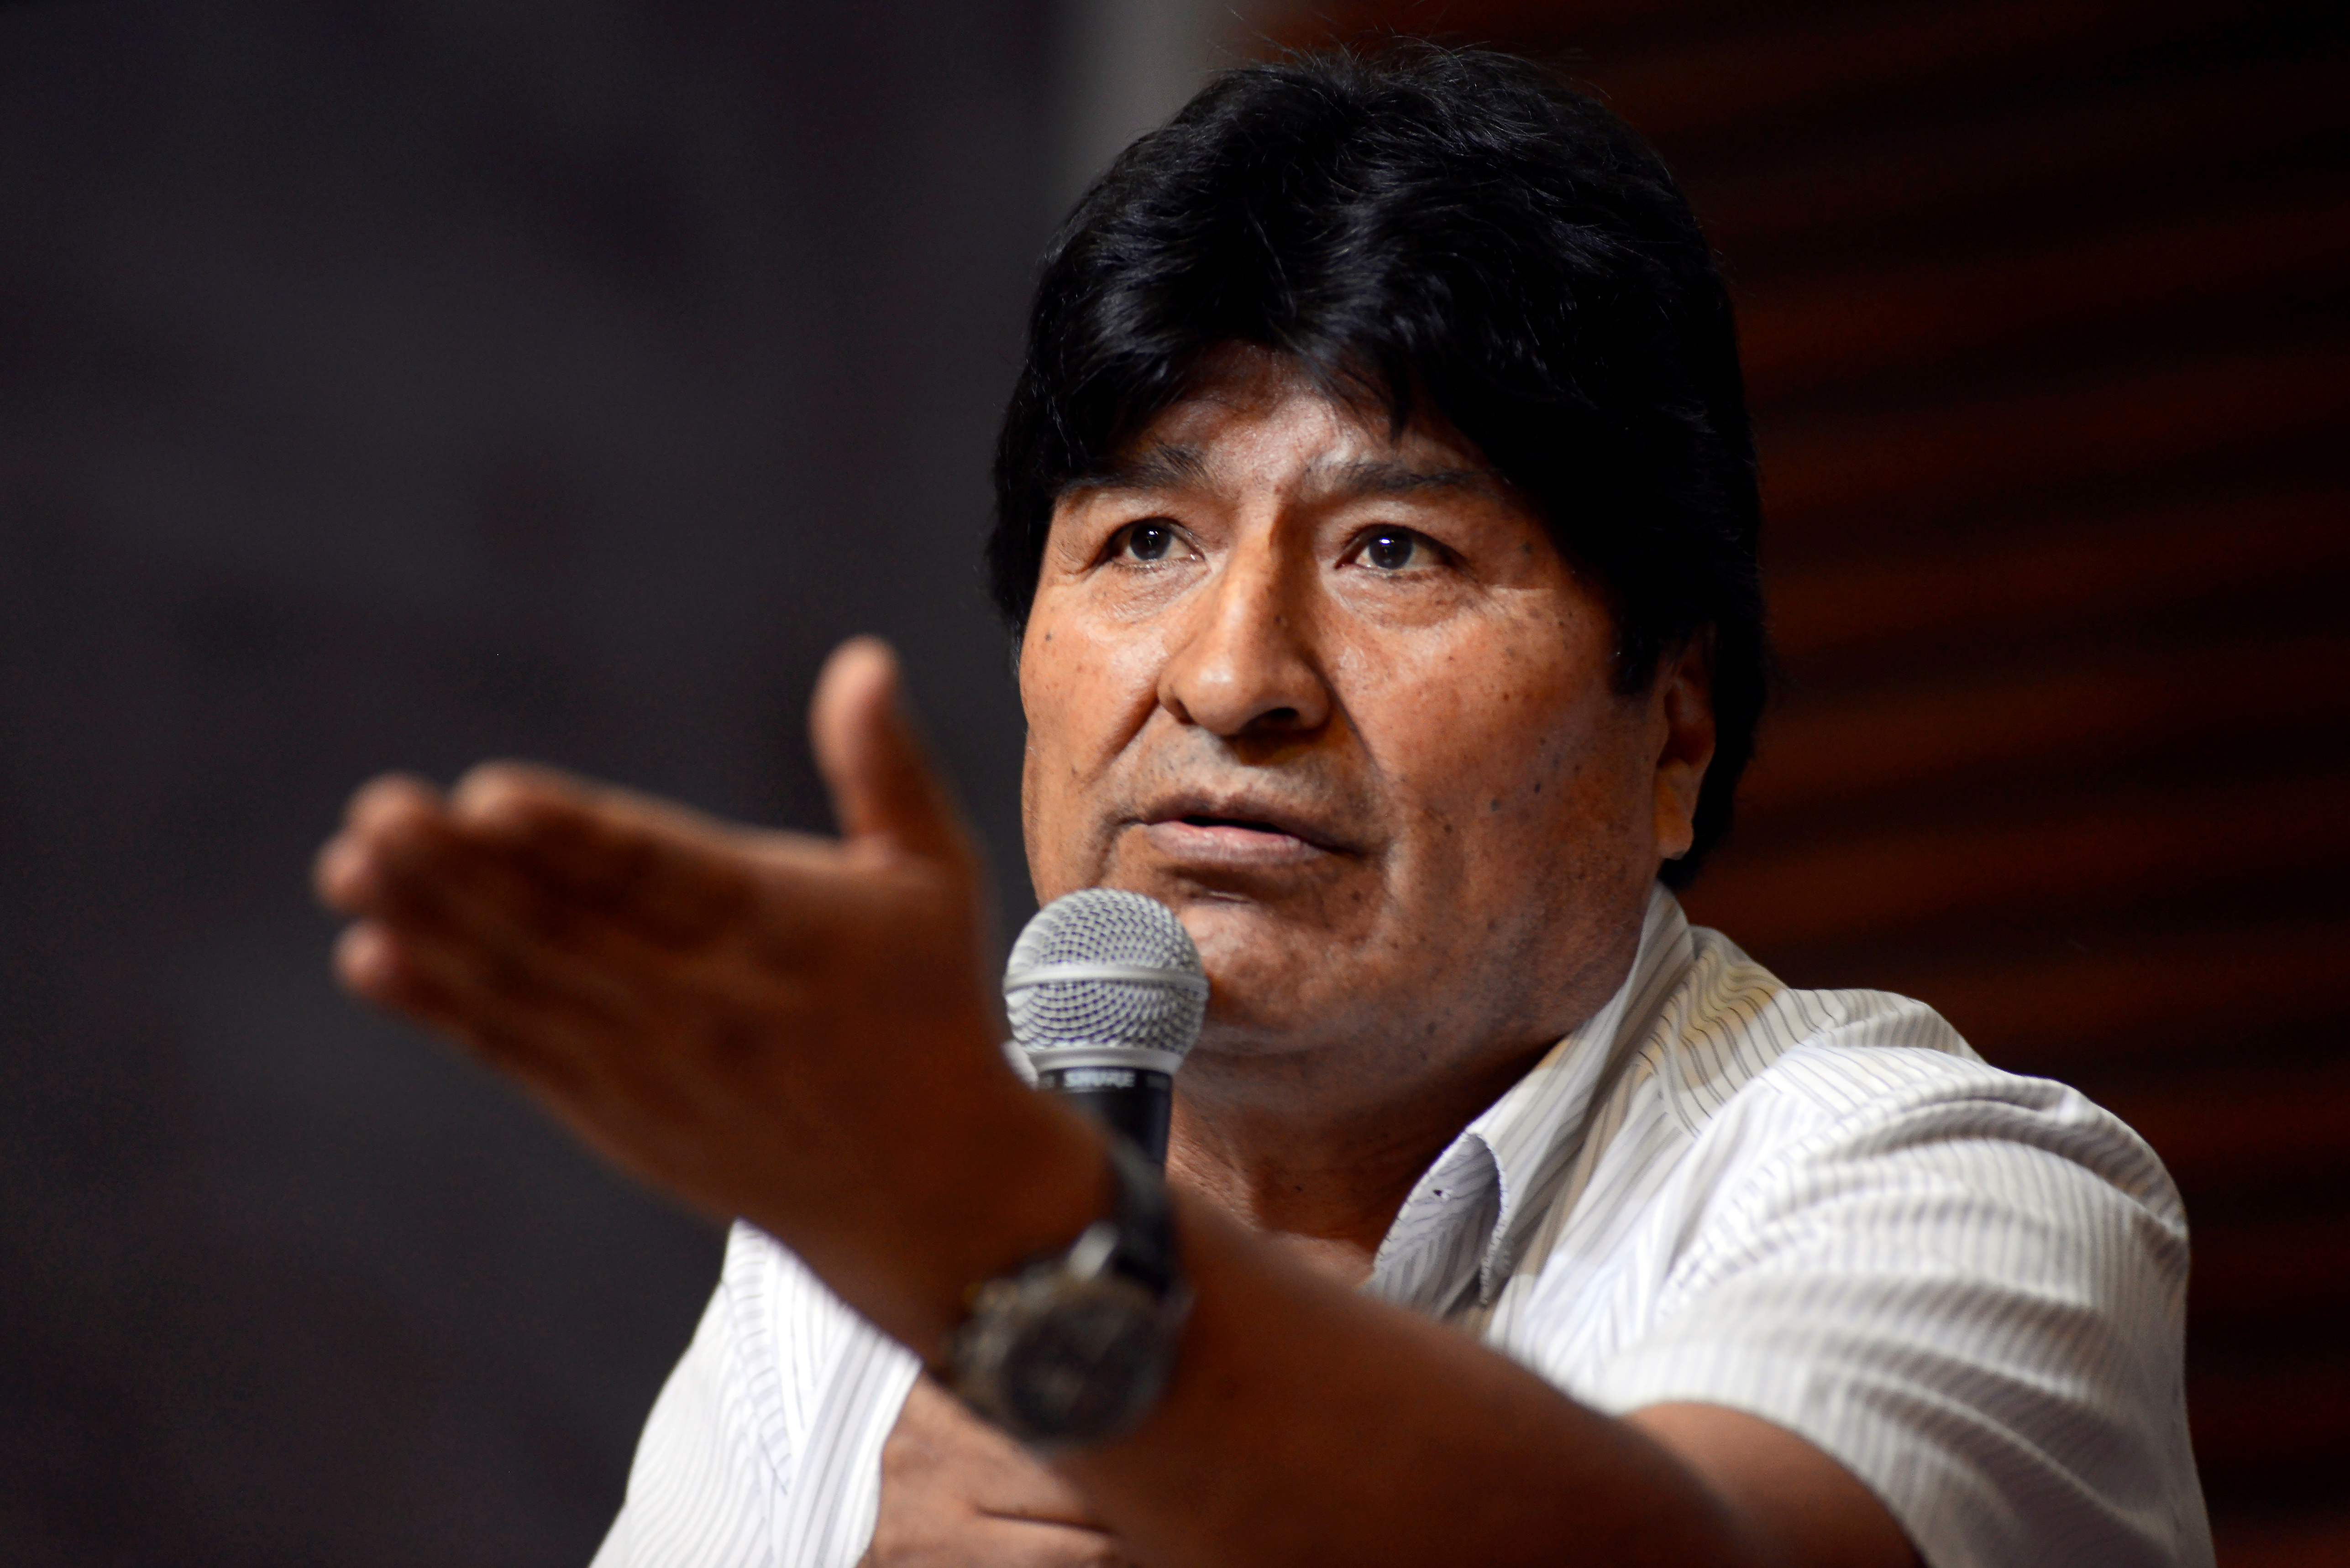 El exmandatario boliviano anunció este jueves que avalúa la posibilidad de postularse como diputado o senador en las próximas elecciones.